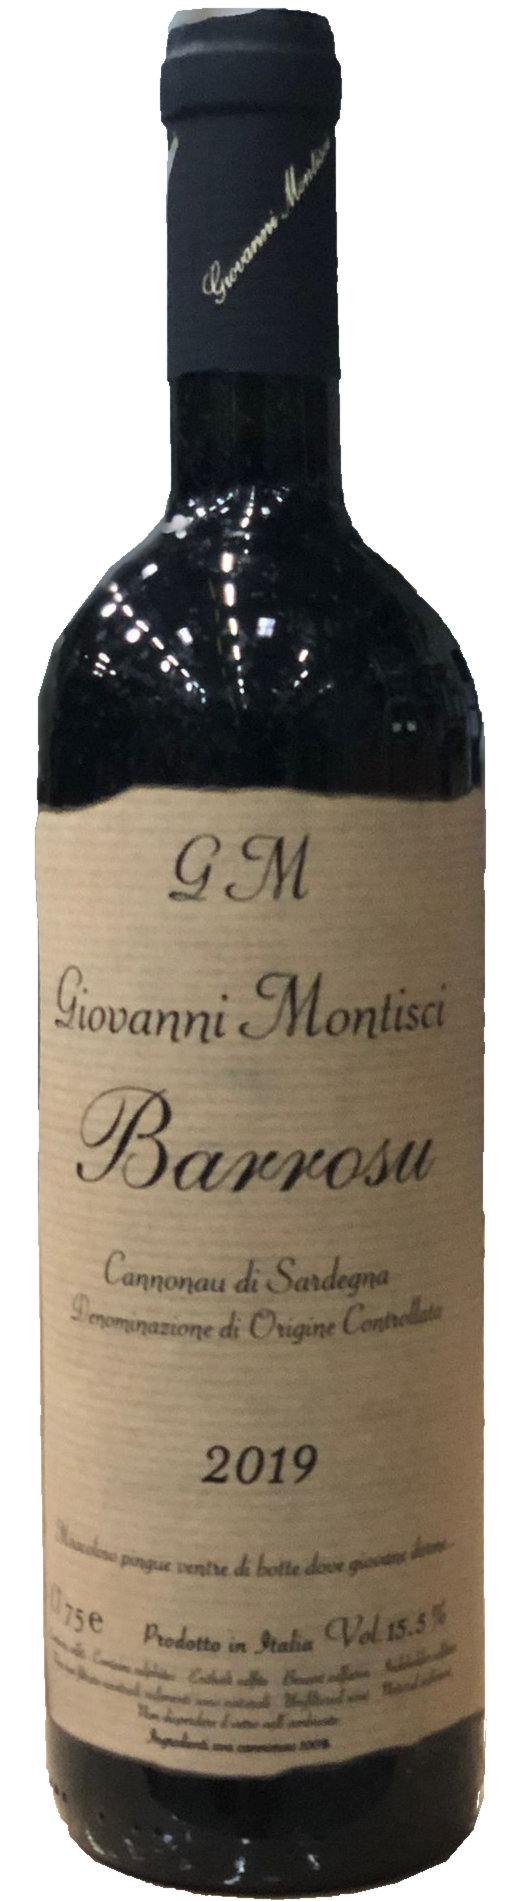 Barrosu 2019 Cannonau - Giovanni Montisci, Italien